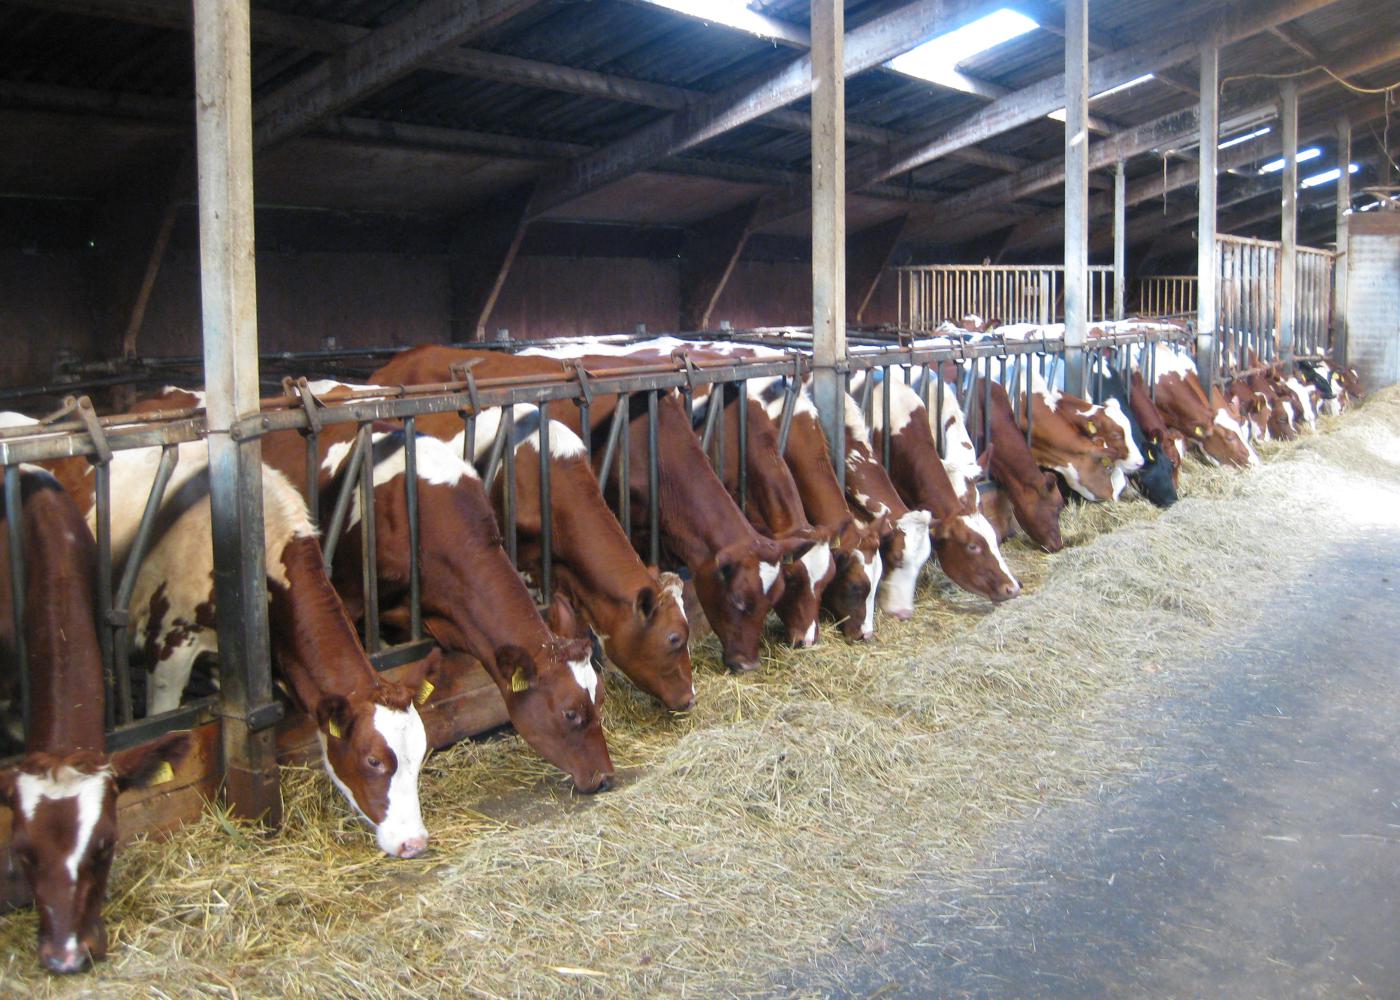 ZuivelNL en Stigas starten promotiecampagne voor veilig en duurzaam werken in de melkveehouderij